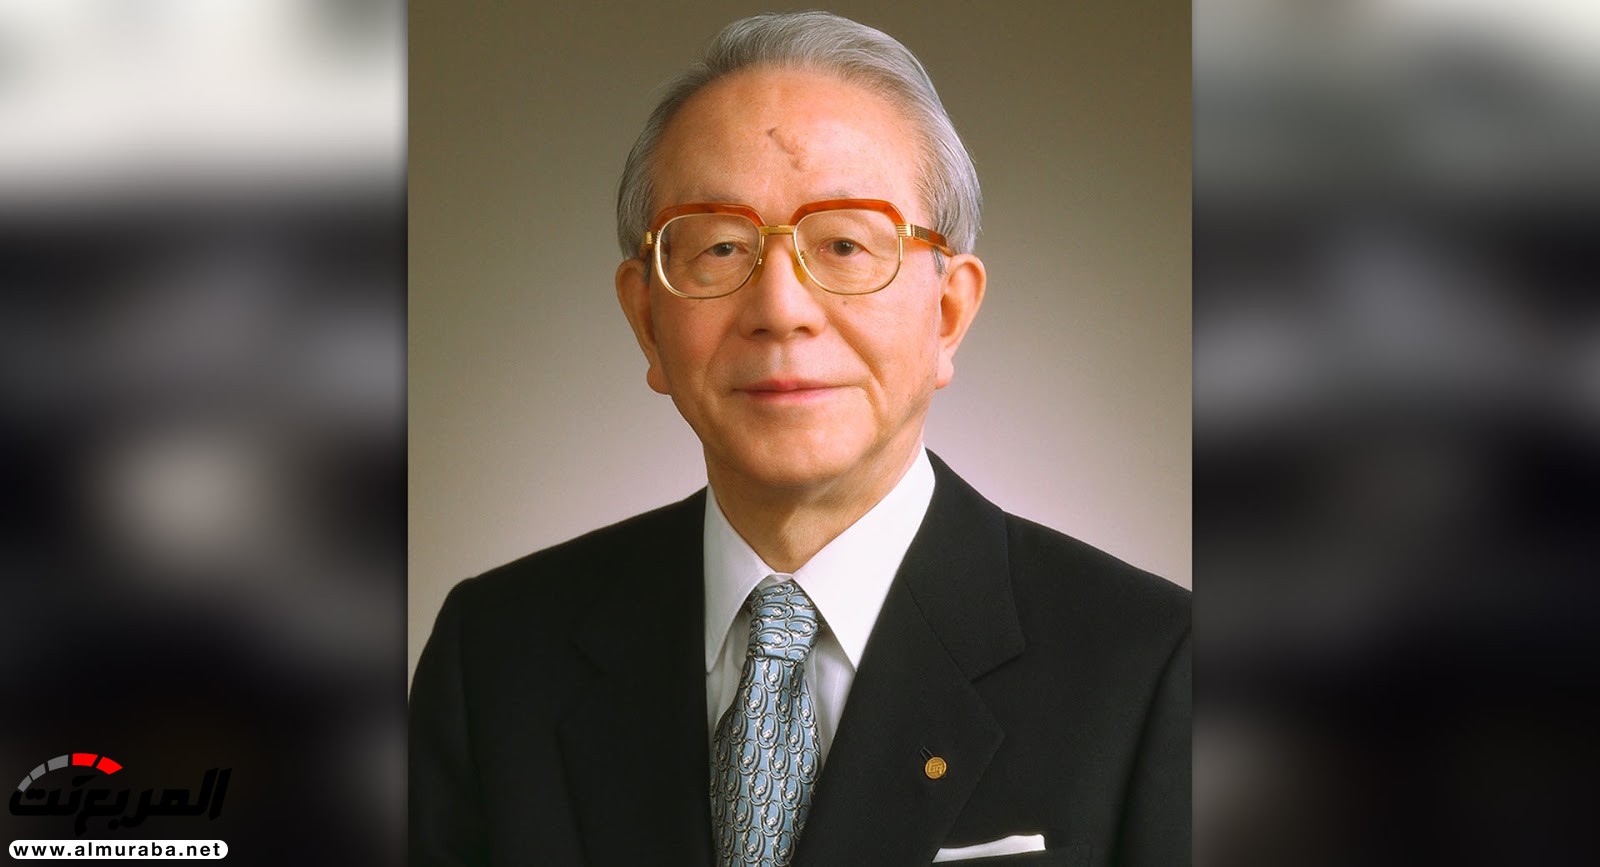 وفاة رئيس تويوتا السابق تاتسورو تويودا عن عمر 88 عاما 7